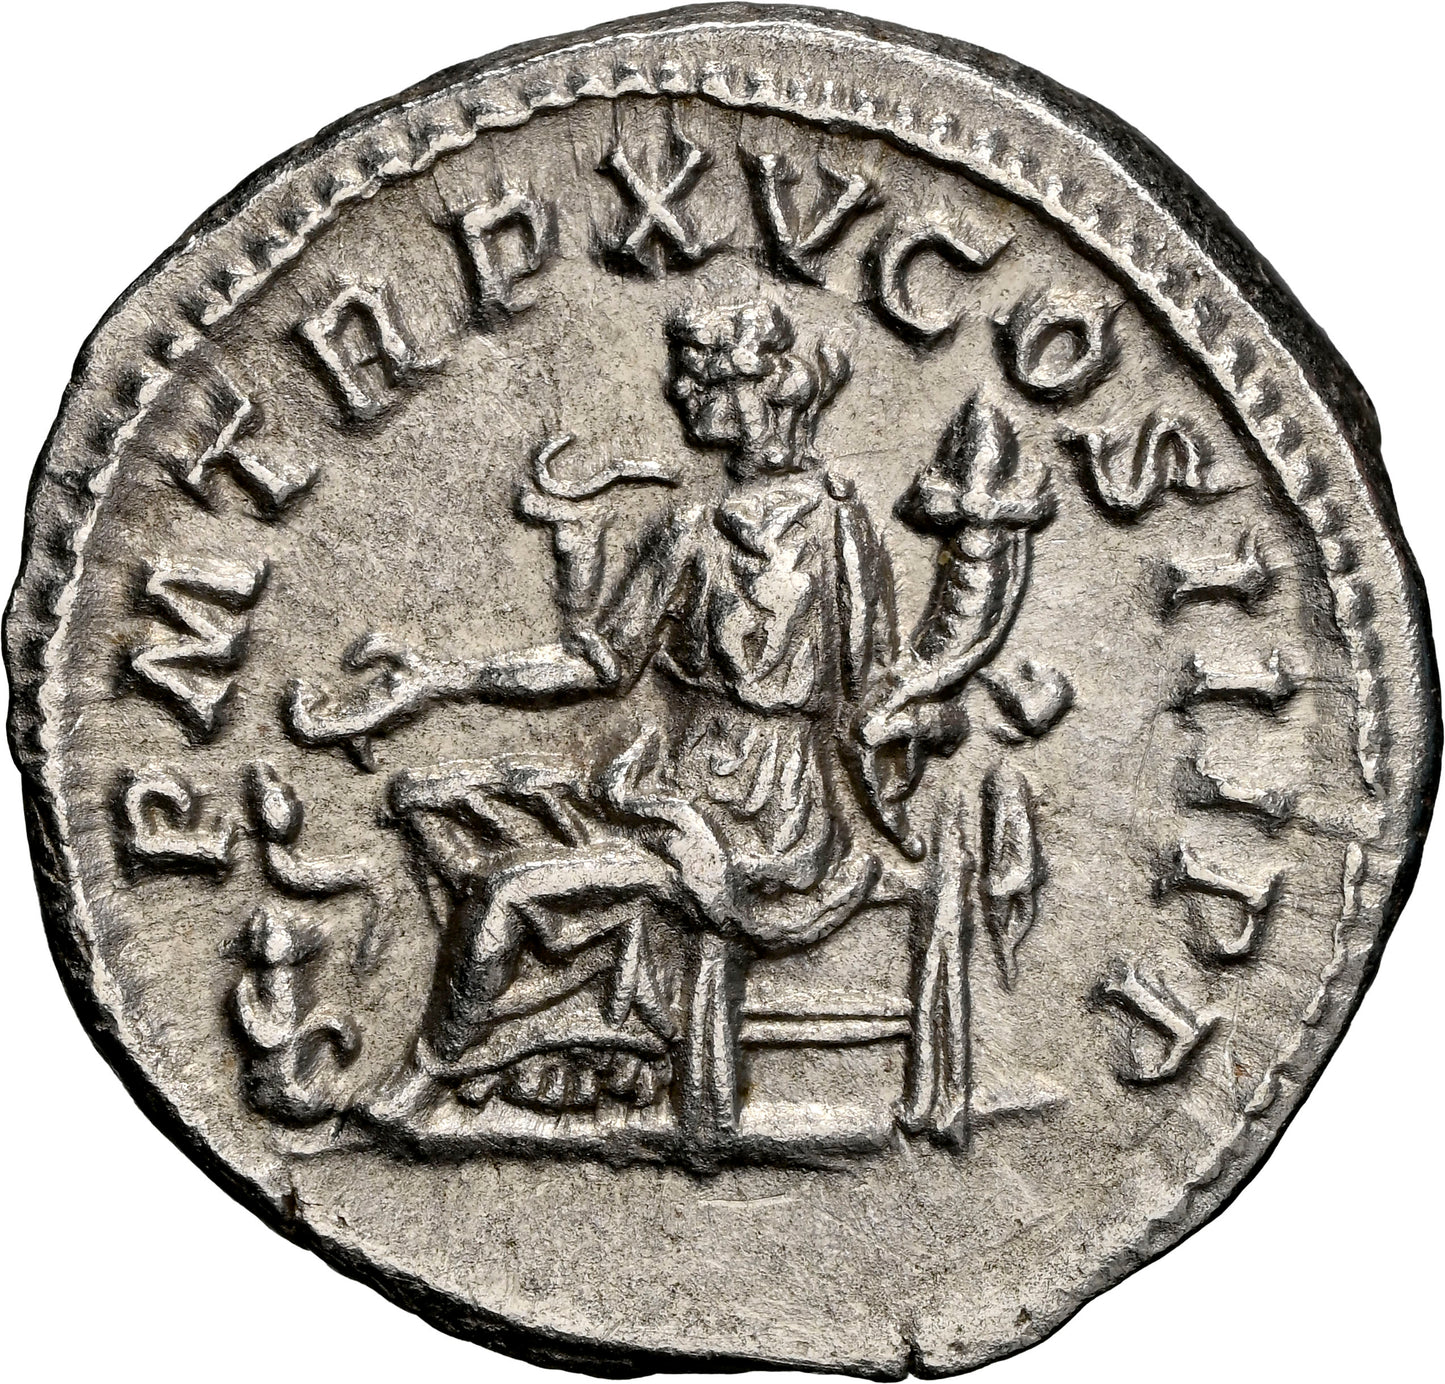 Roman Empire - Caracalla - Silver Denarius - NGC Ch XF - RIC:196